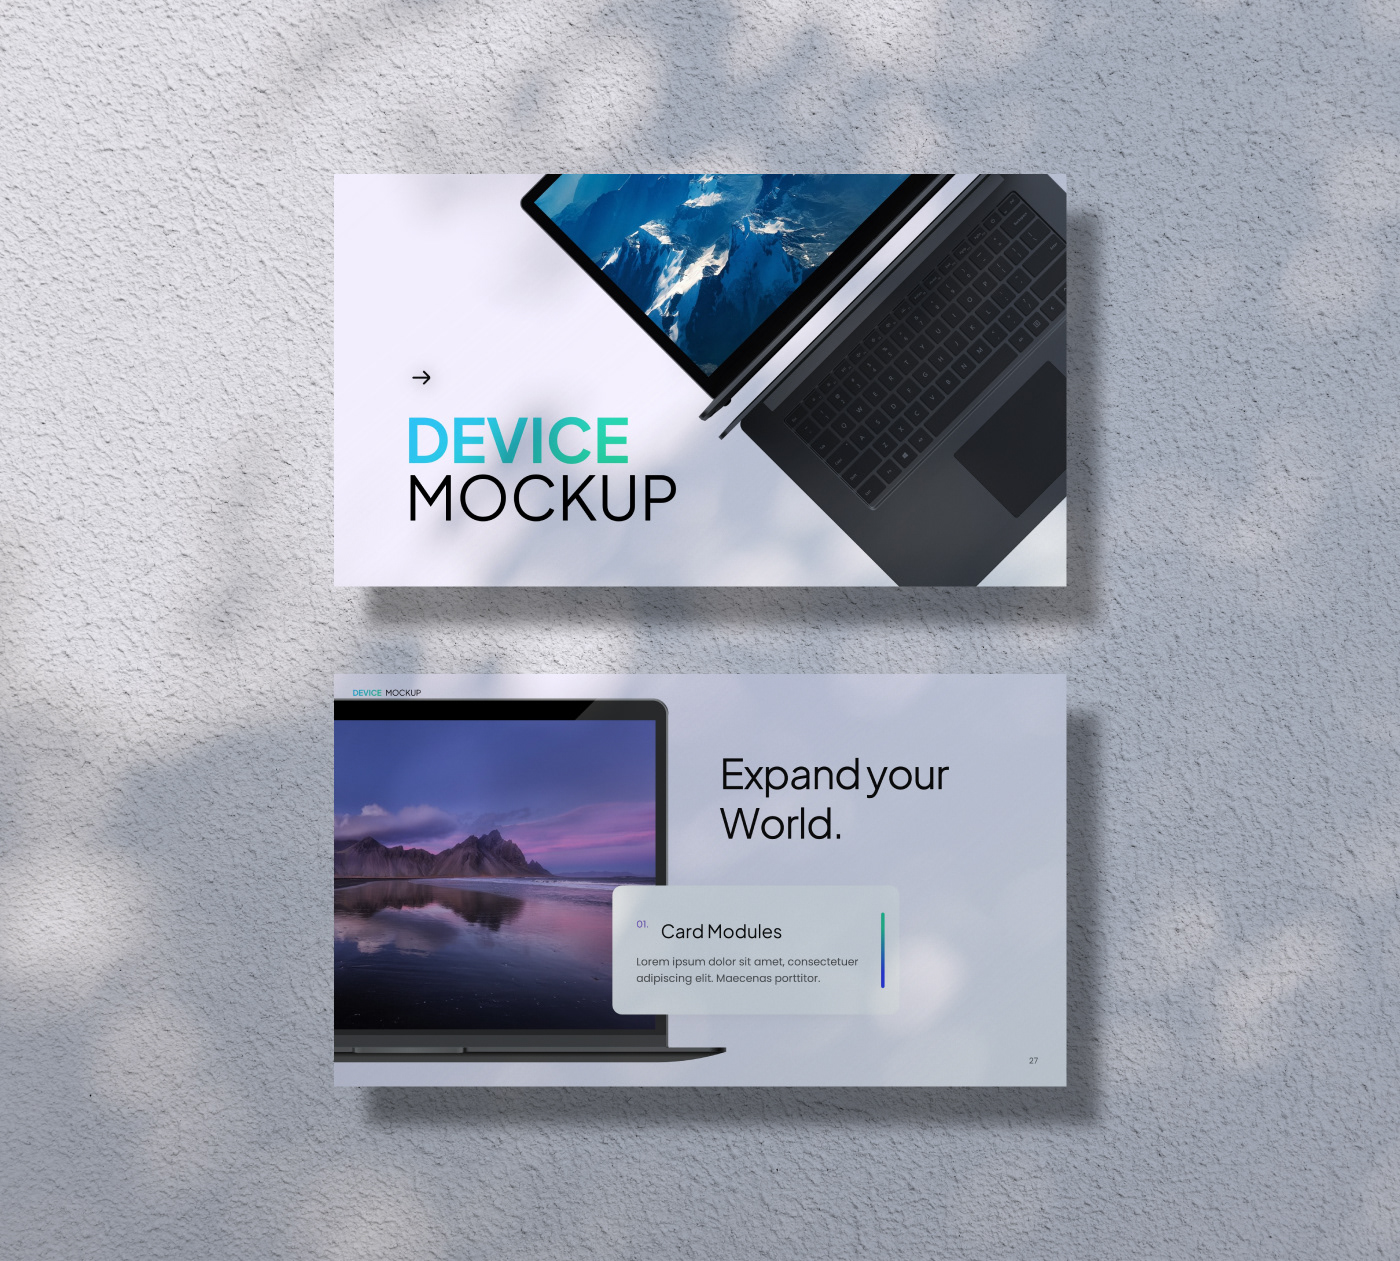 design presentation Mockup devices Responsive UI/UX assets pitch deck presentation design graphic design 